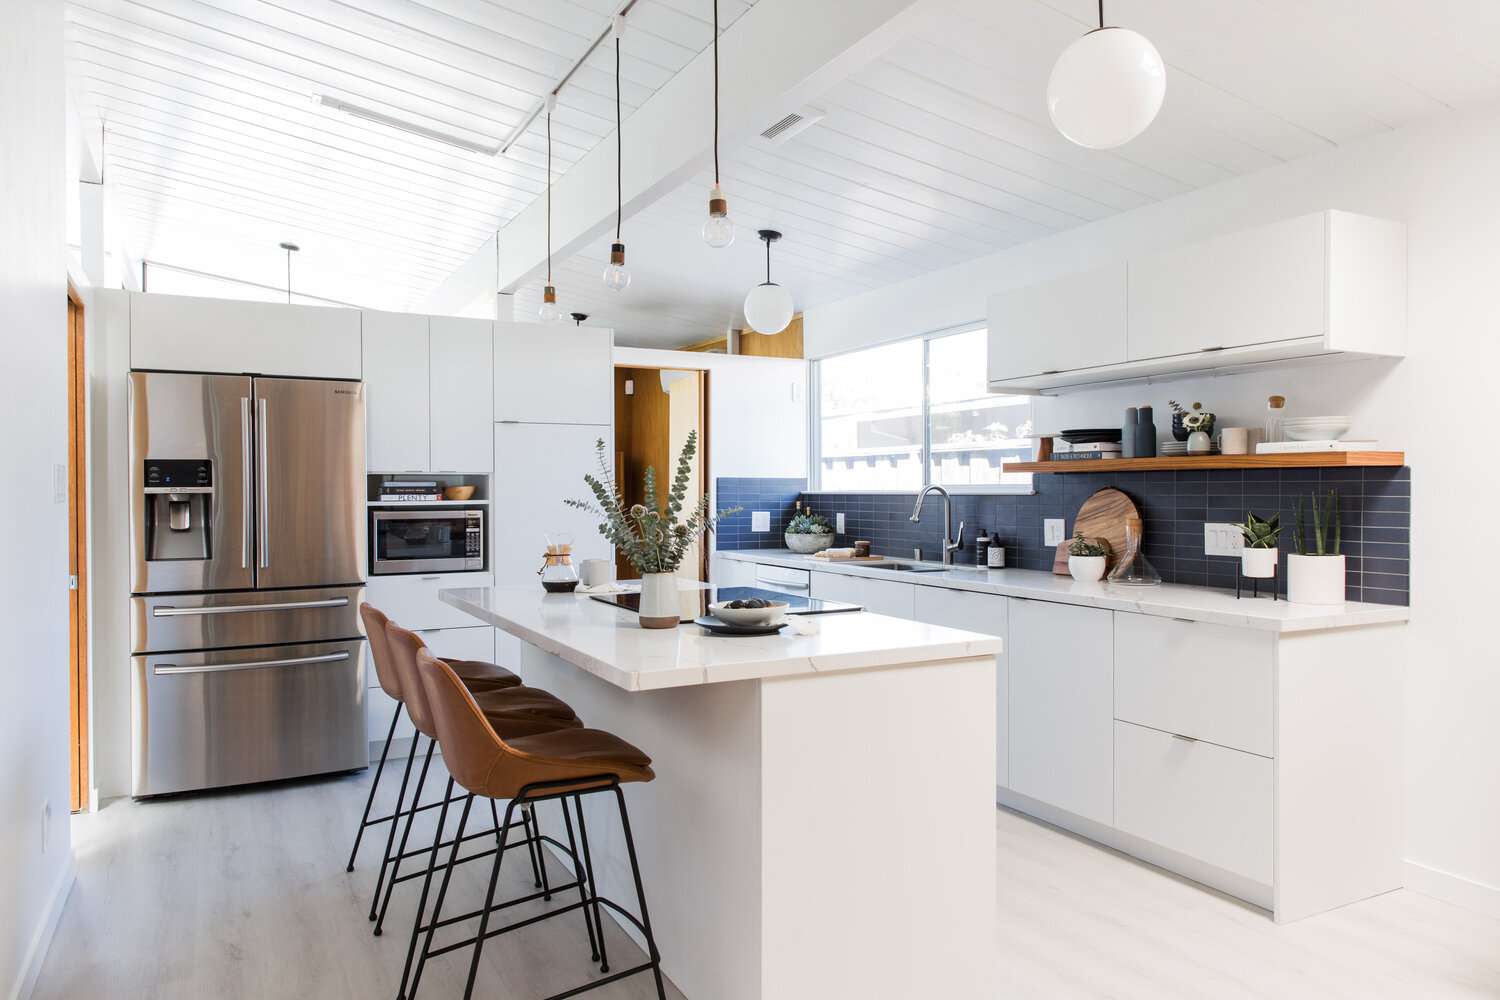 cozinha branca moderna com backsplash de azulejos azul-marinho